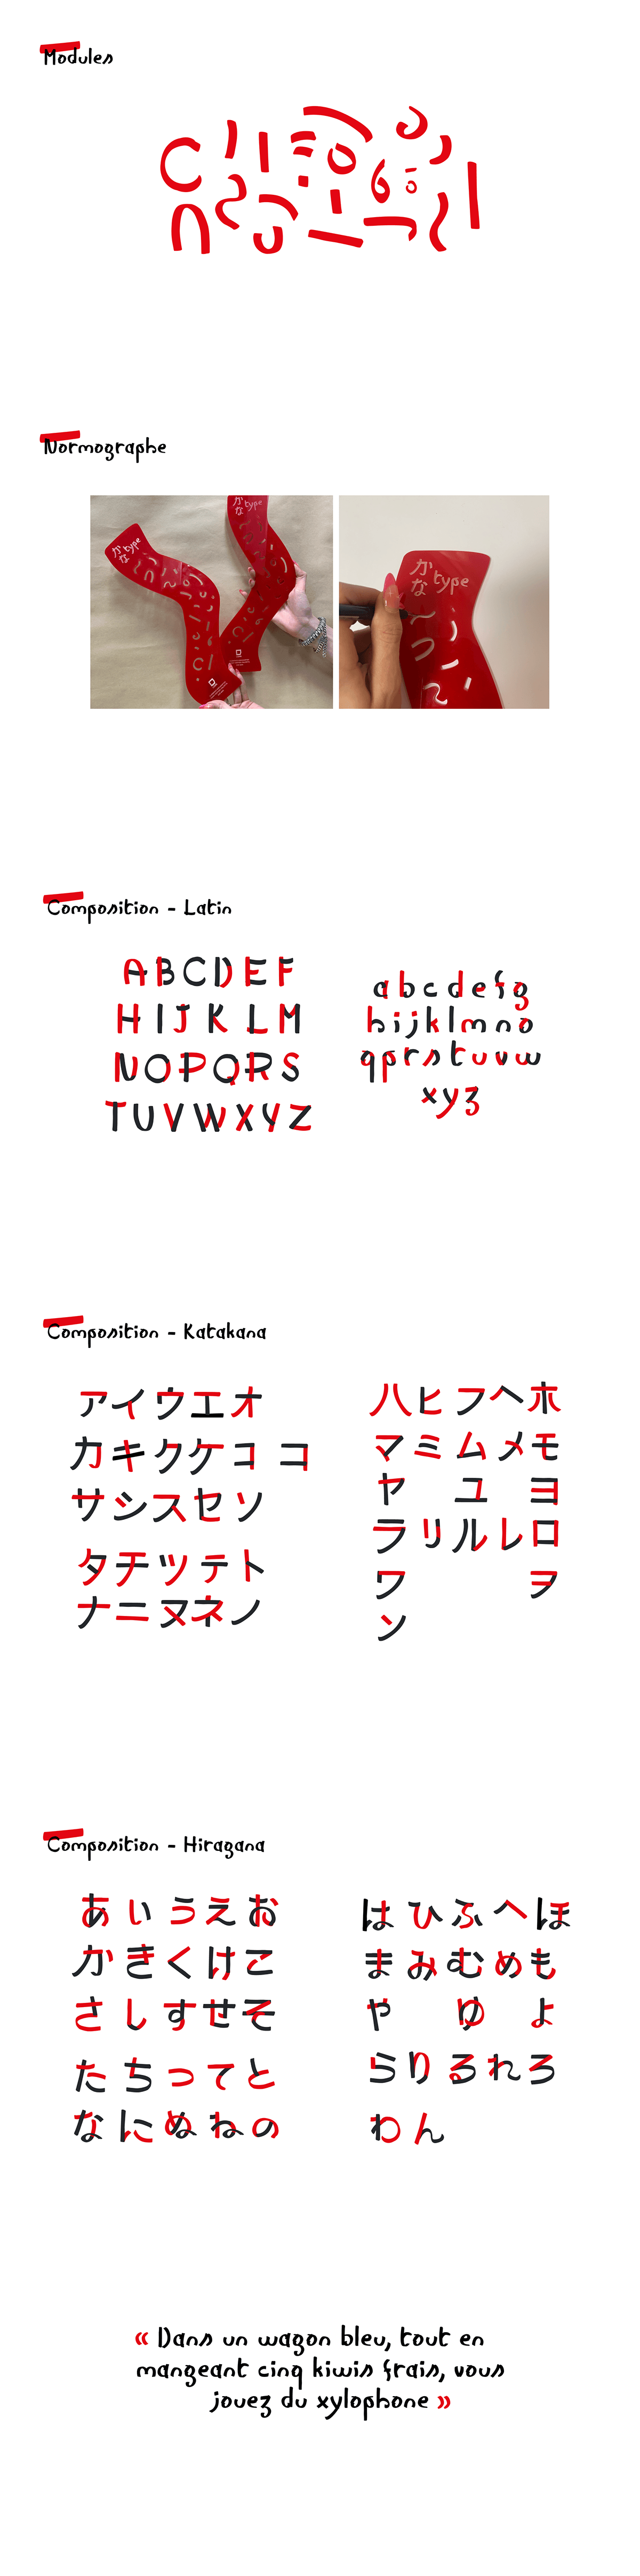 Typeface typography   japan Katakana Hiragana kanji